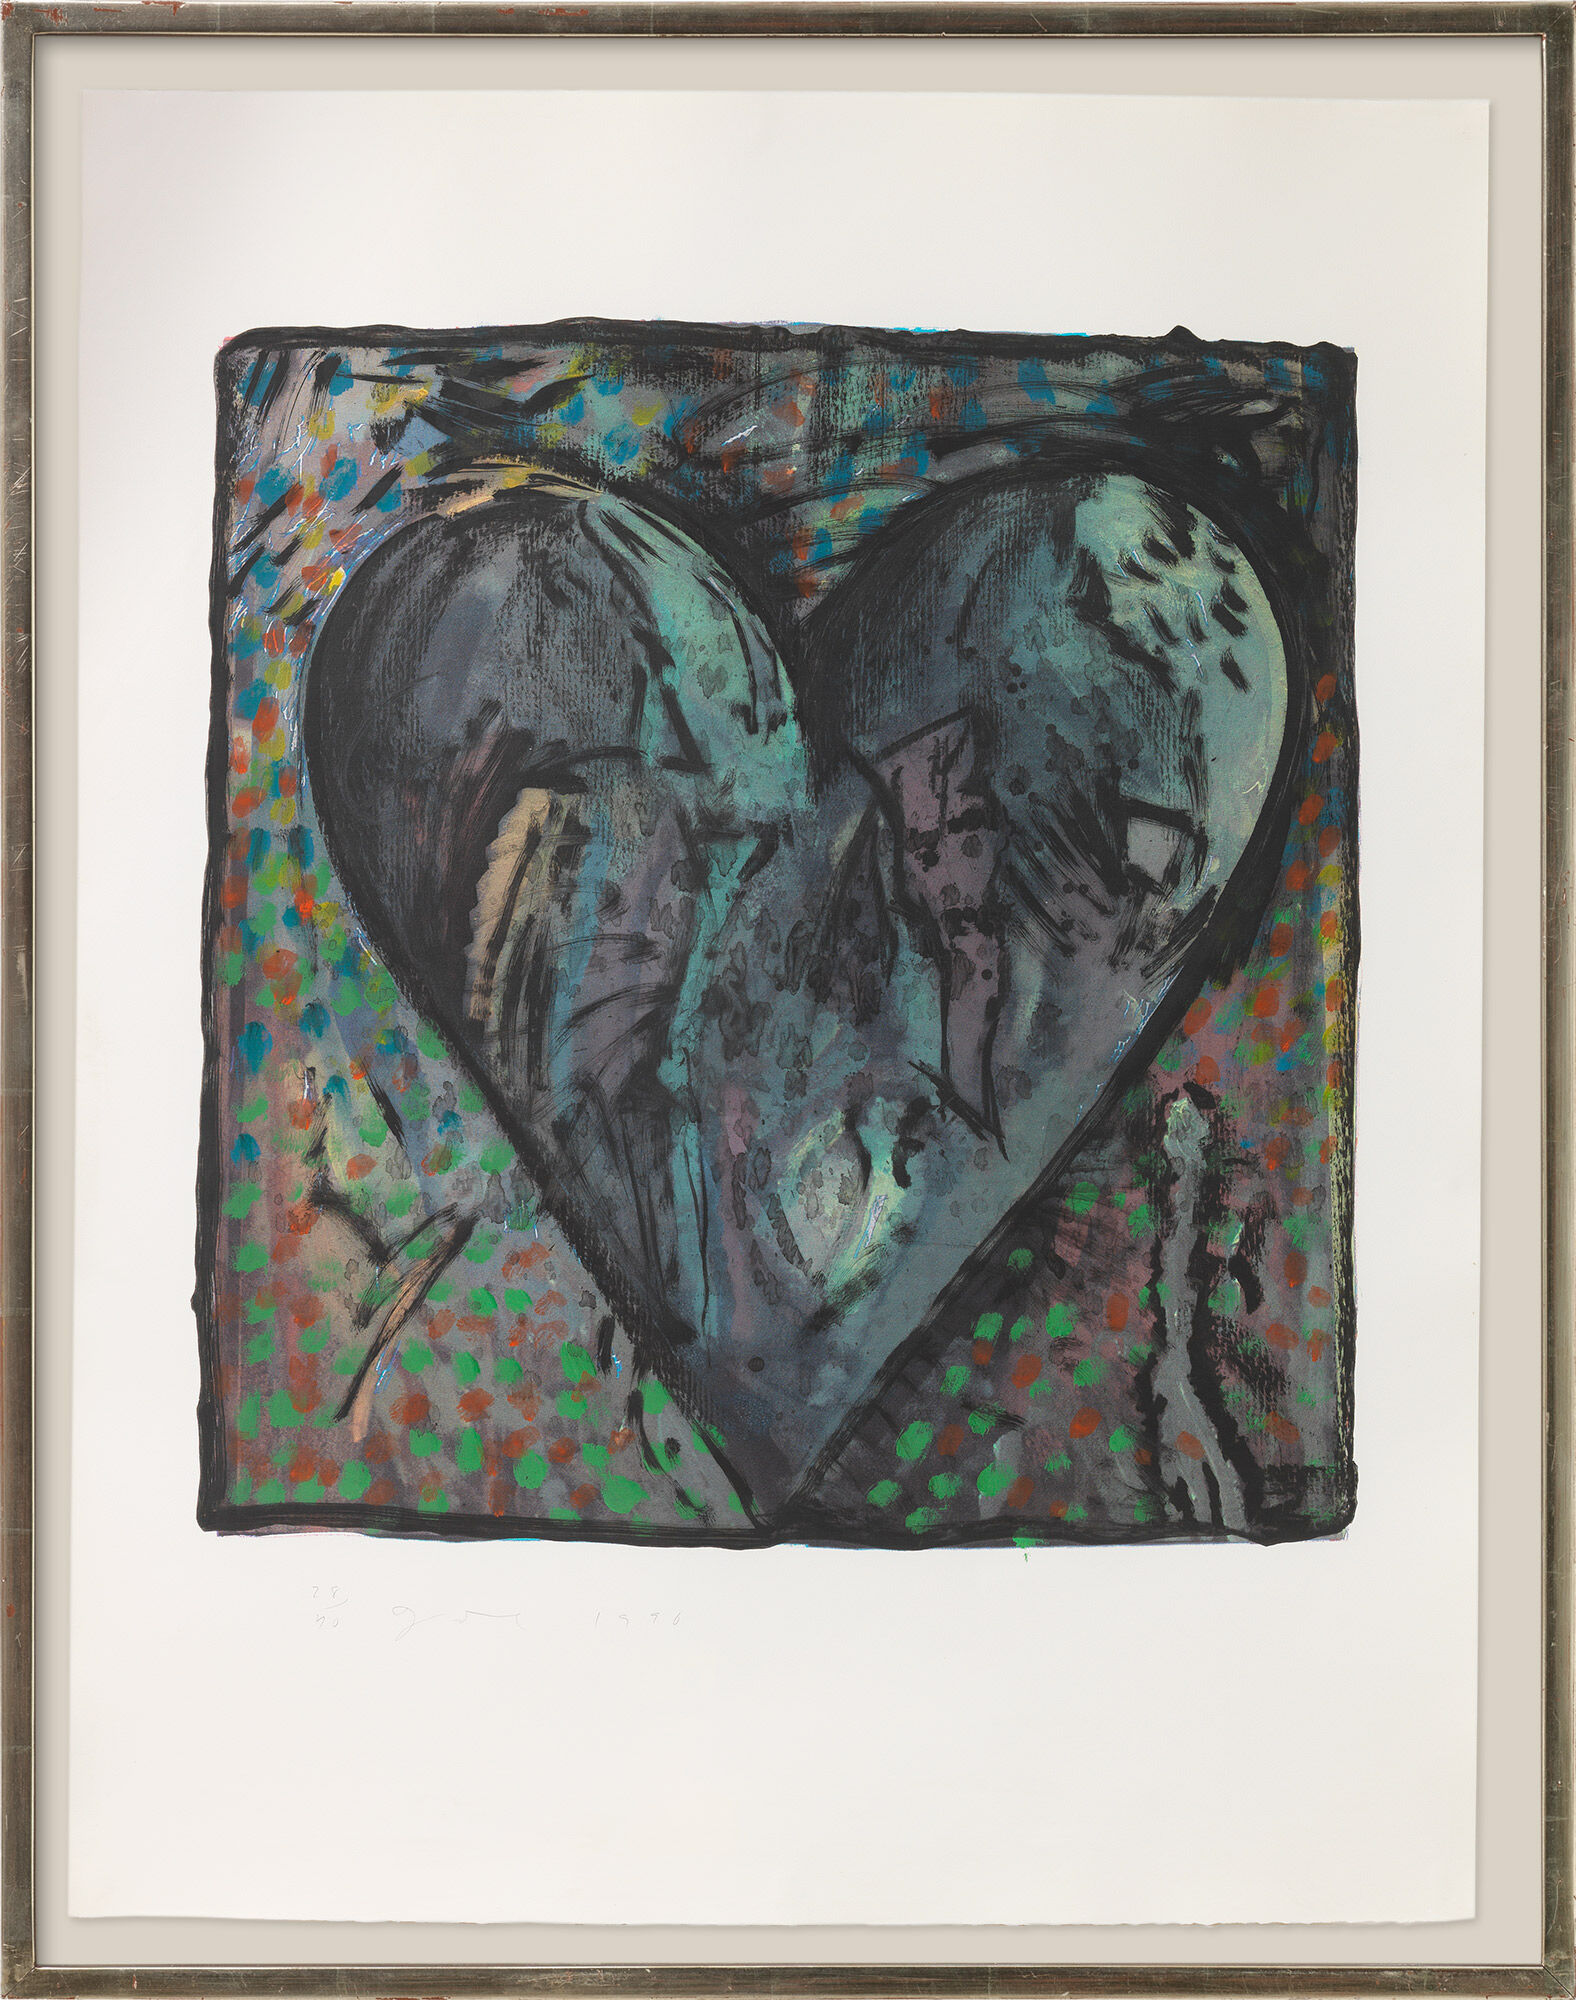 Beeld "The Hand-Coloured Viennese Hearts VI" (1990) von Jim Dine